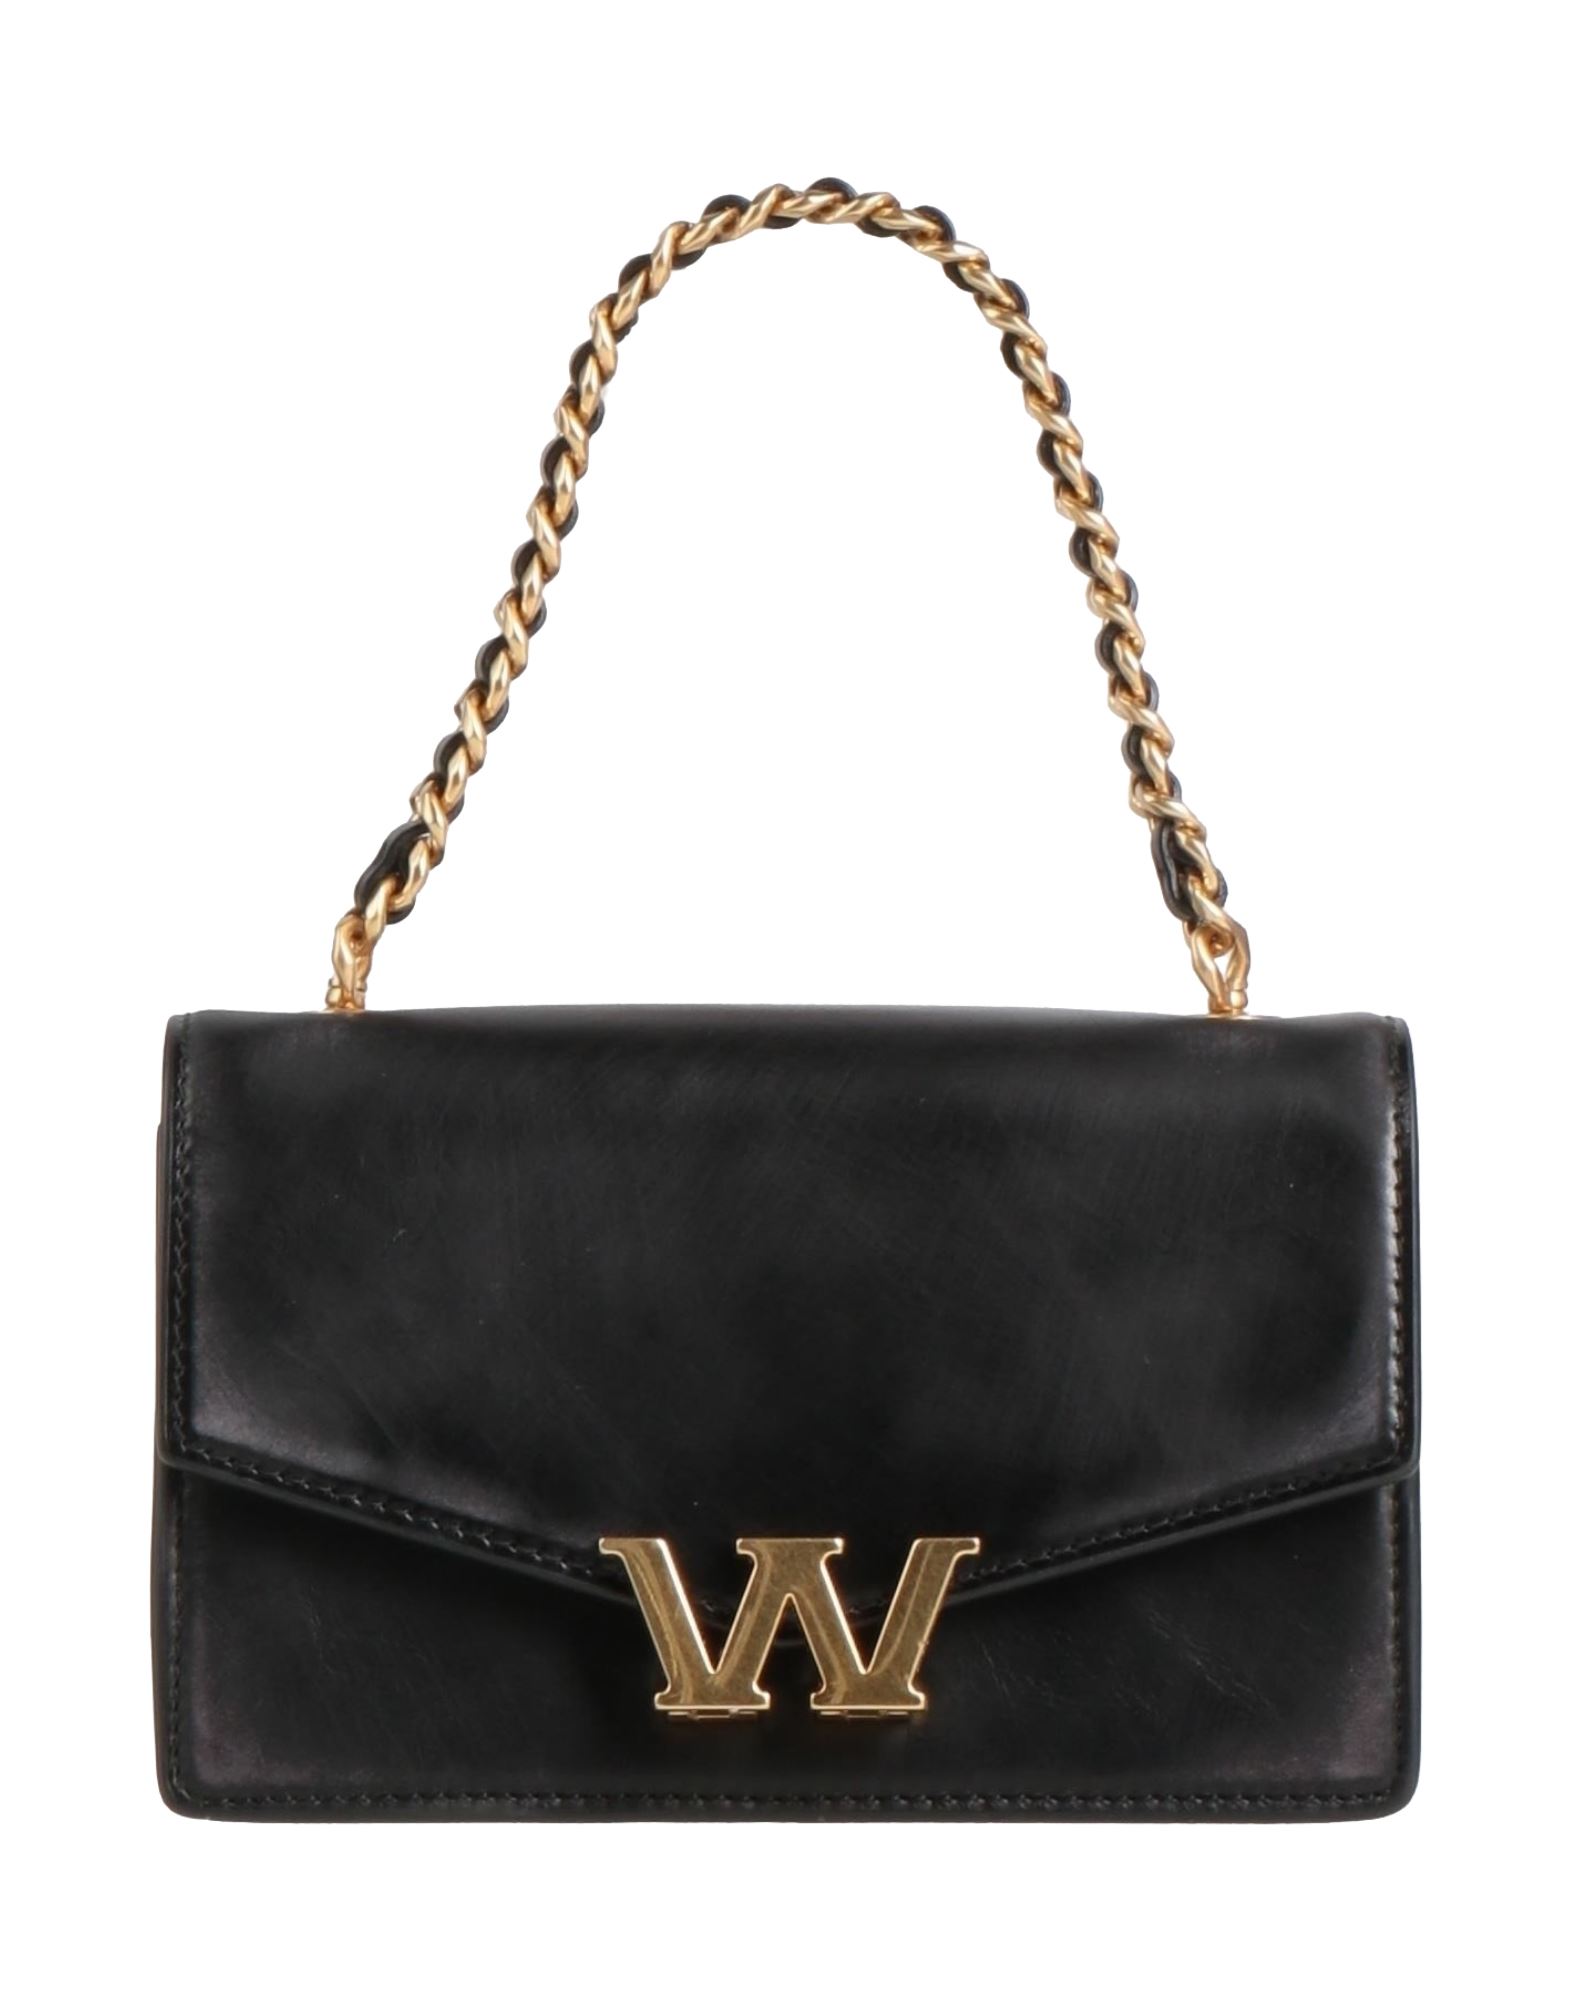 ALEXANDER WANG Handbags - Item 45786325